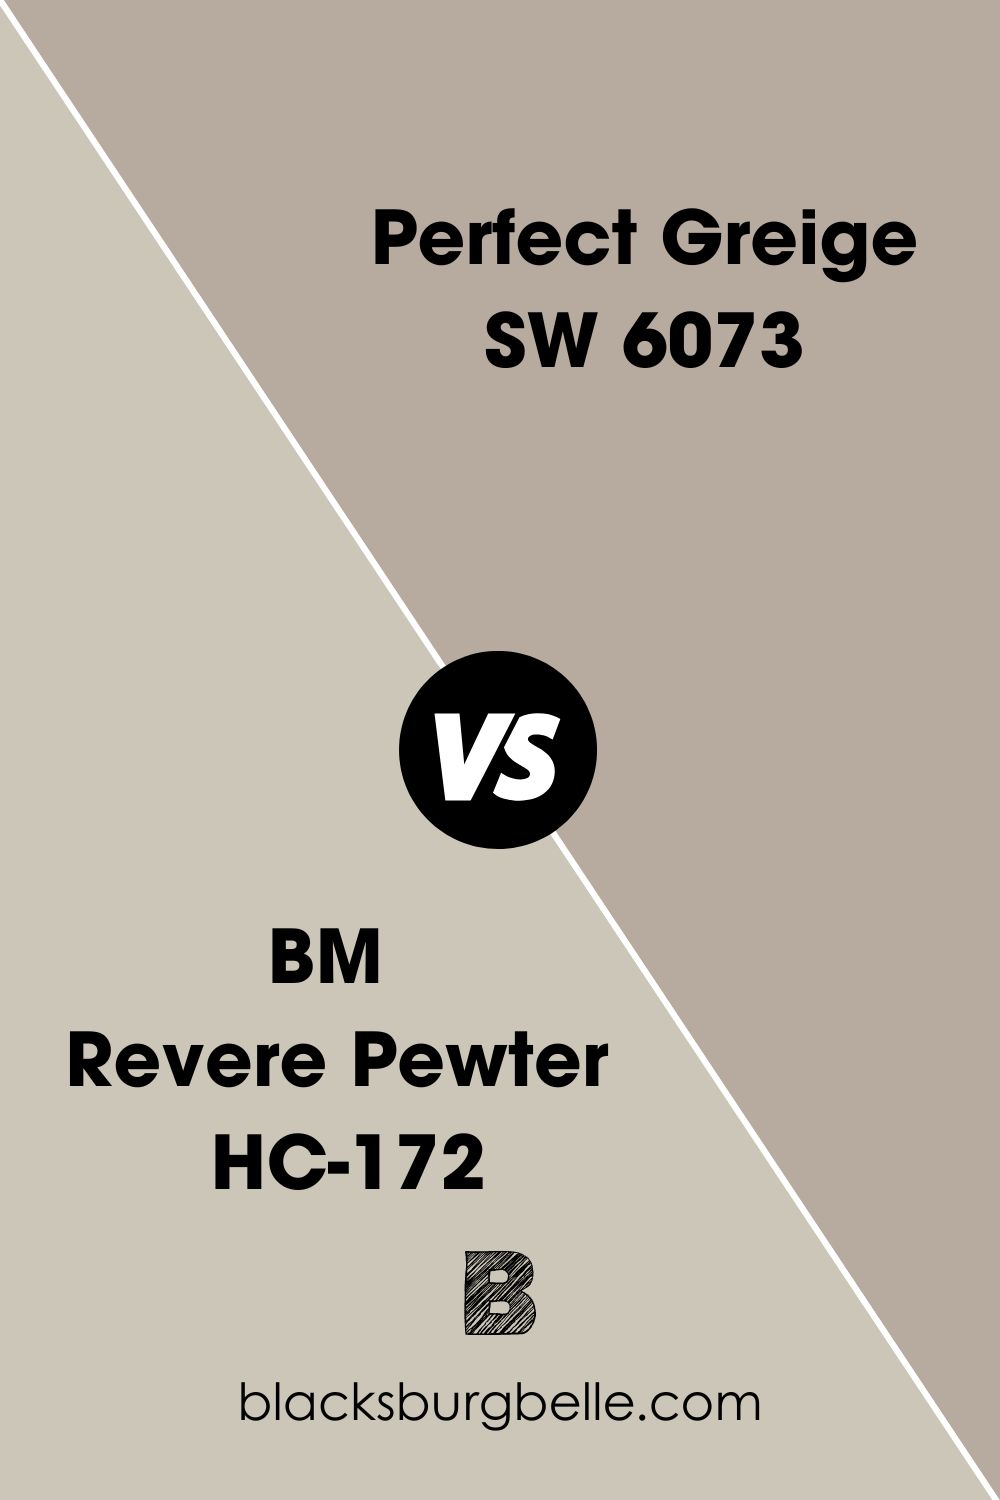 BM Revere Pewter HC-172